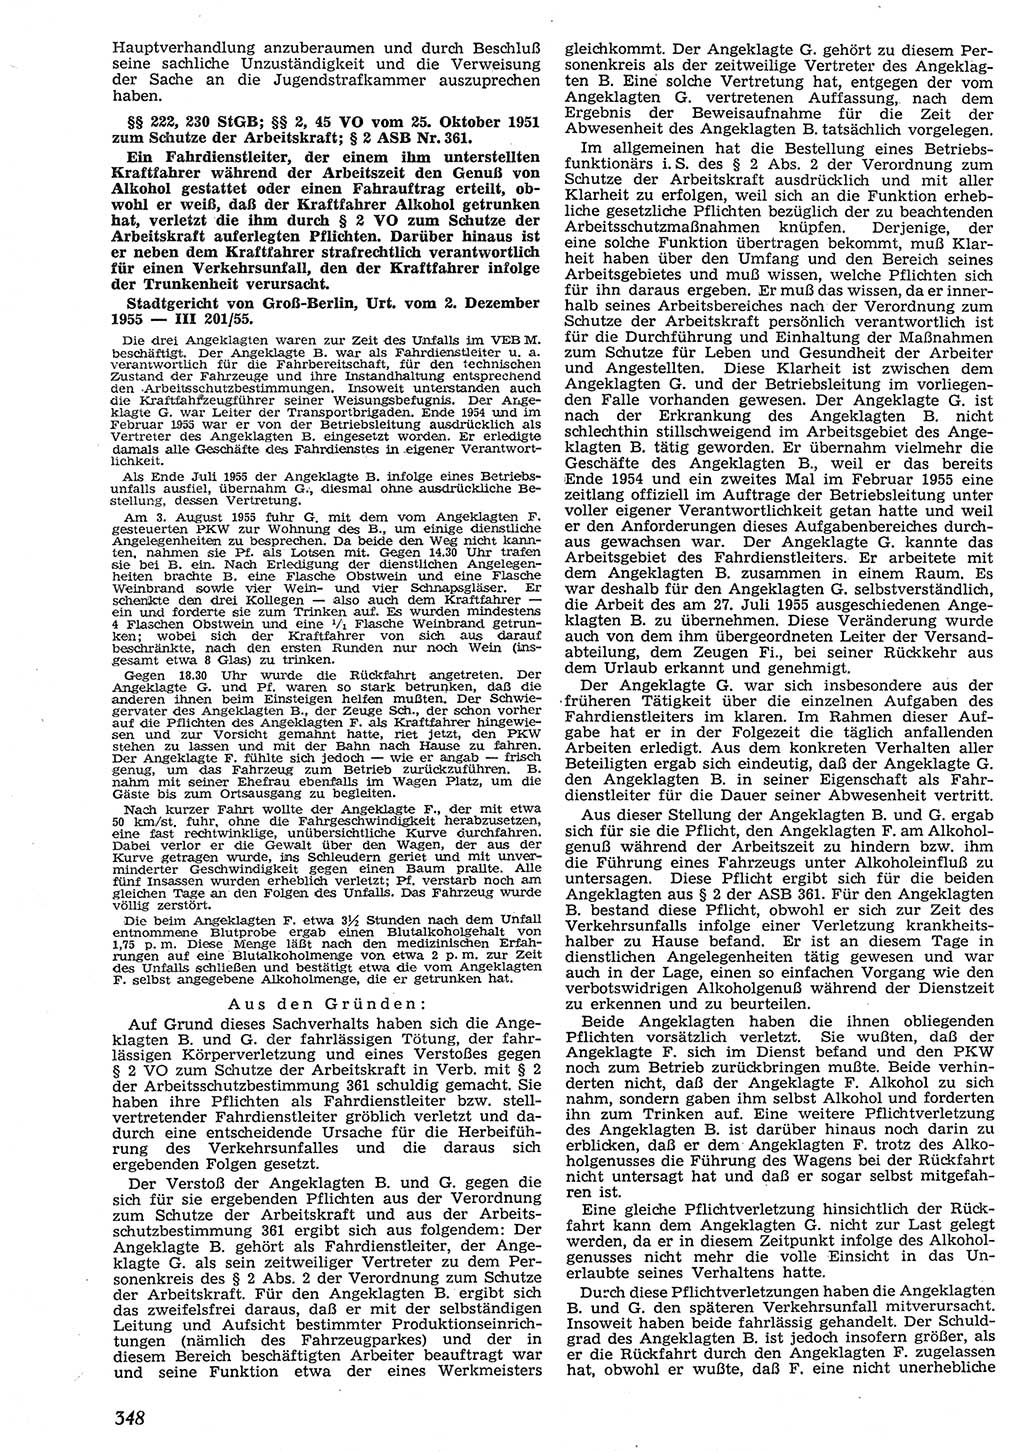 Neue Justiz (NJ), Zeitschrift für Recht und Rechtswissenschaft [Deutsche Demokratische Republik (DDR)], 10. Jahrgang 1956, Seite 348 (NJ DDR 1956, S. 348)